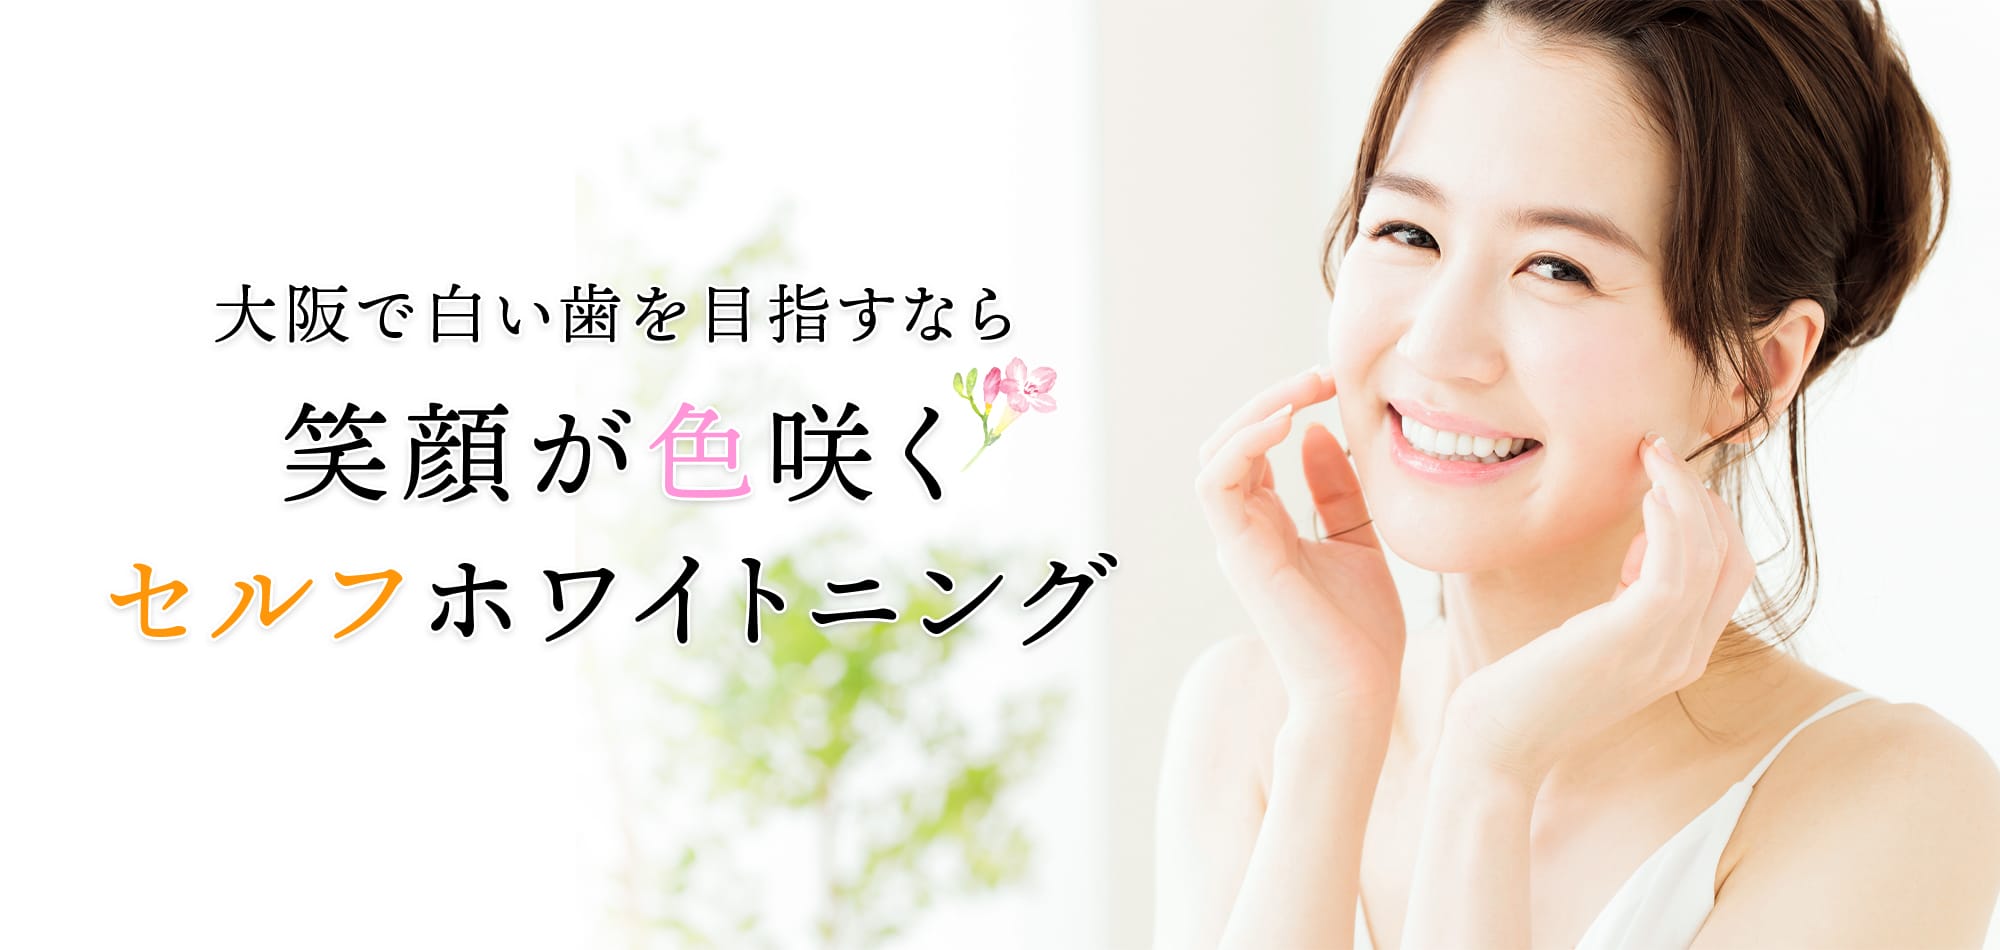 大阪で白い歯を目指すなら 笑顔が色咲くセルフホワイトニング